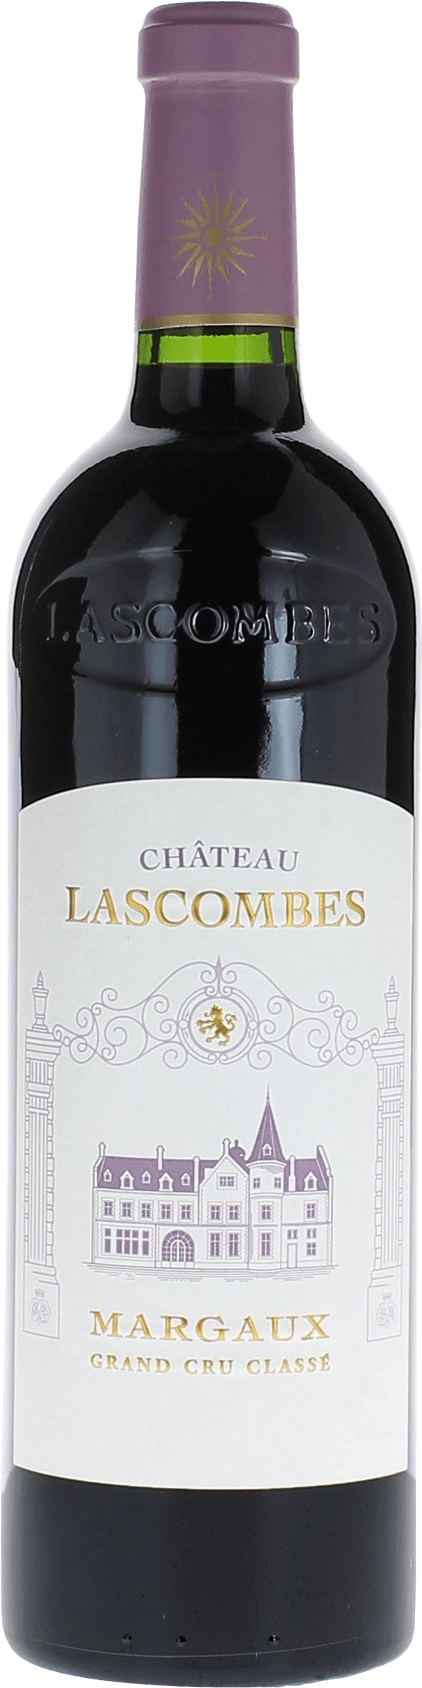 Lascombes 1982 2me Grand cru class Margaux, Bordeaux rouge